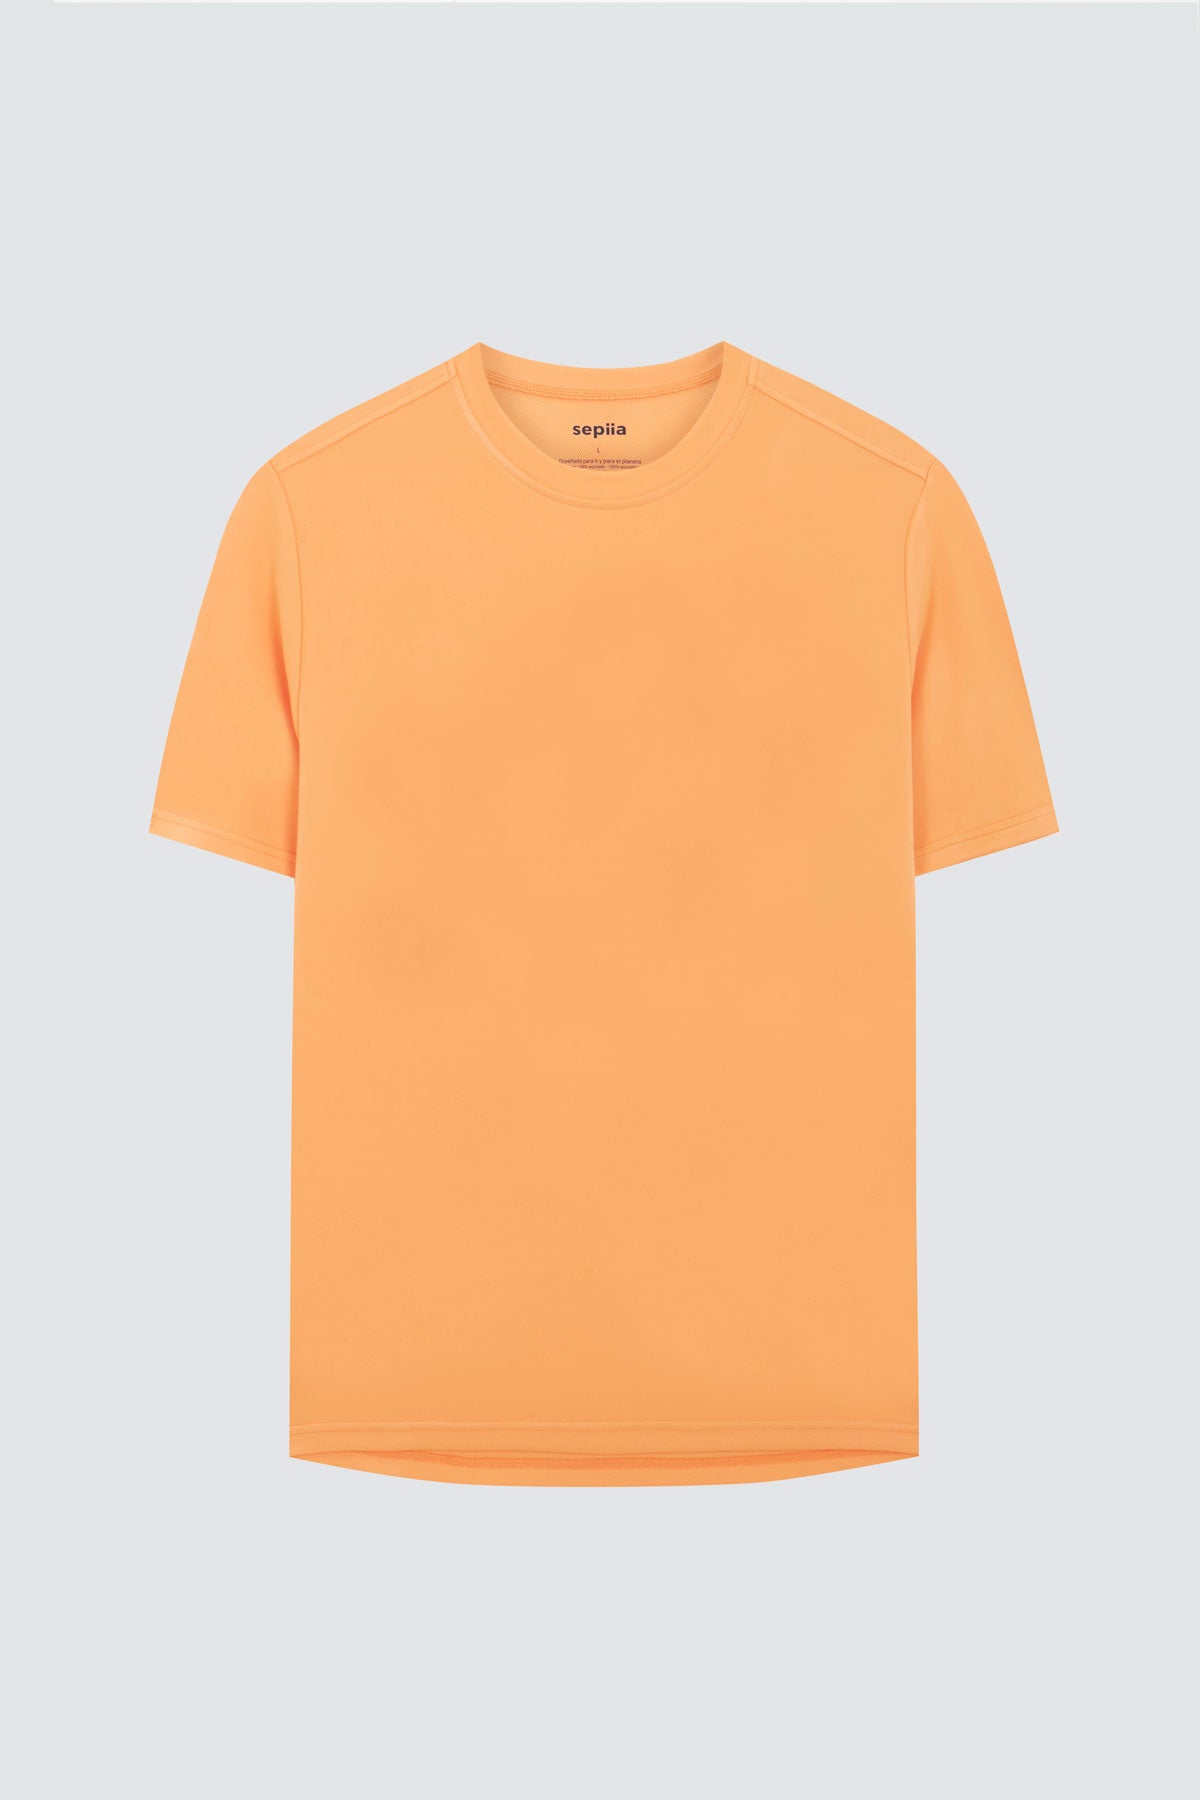 Camiseta de hombre en naranja calatea de Sepiia, fresca y estilosa. Foto prenda en plano